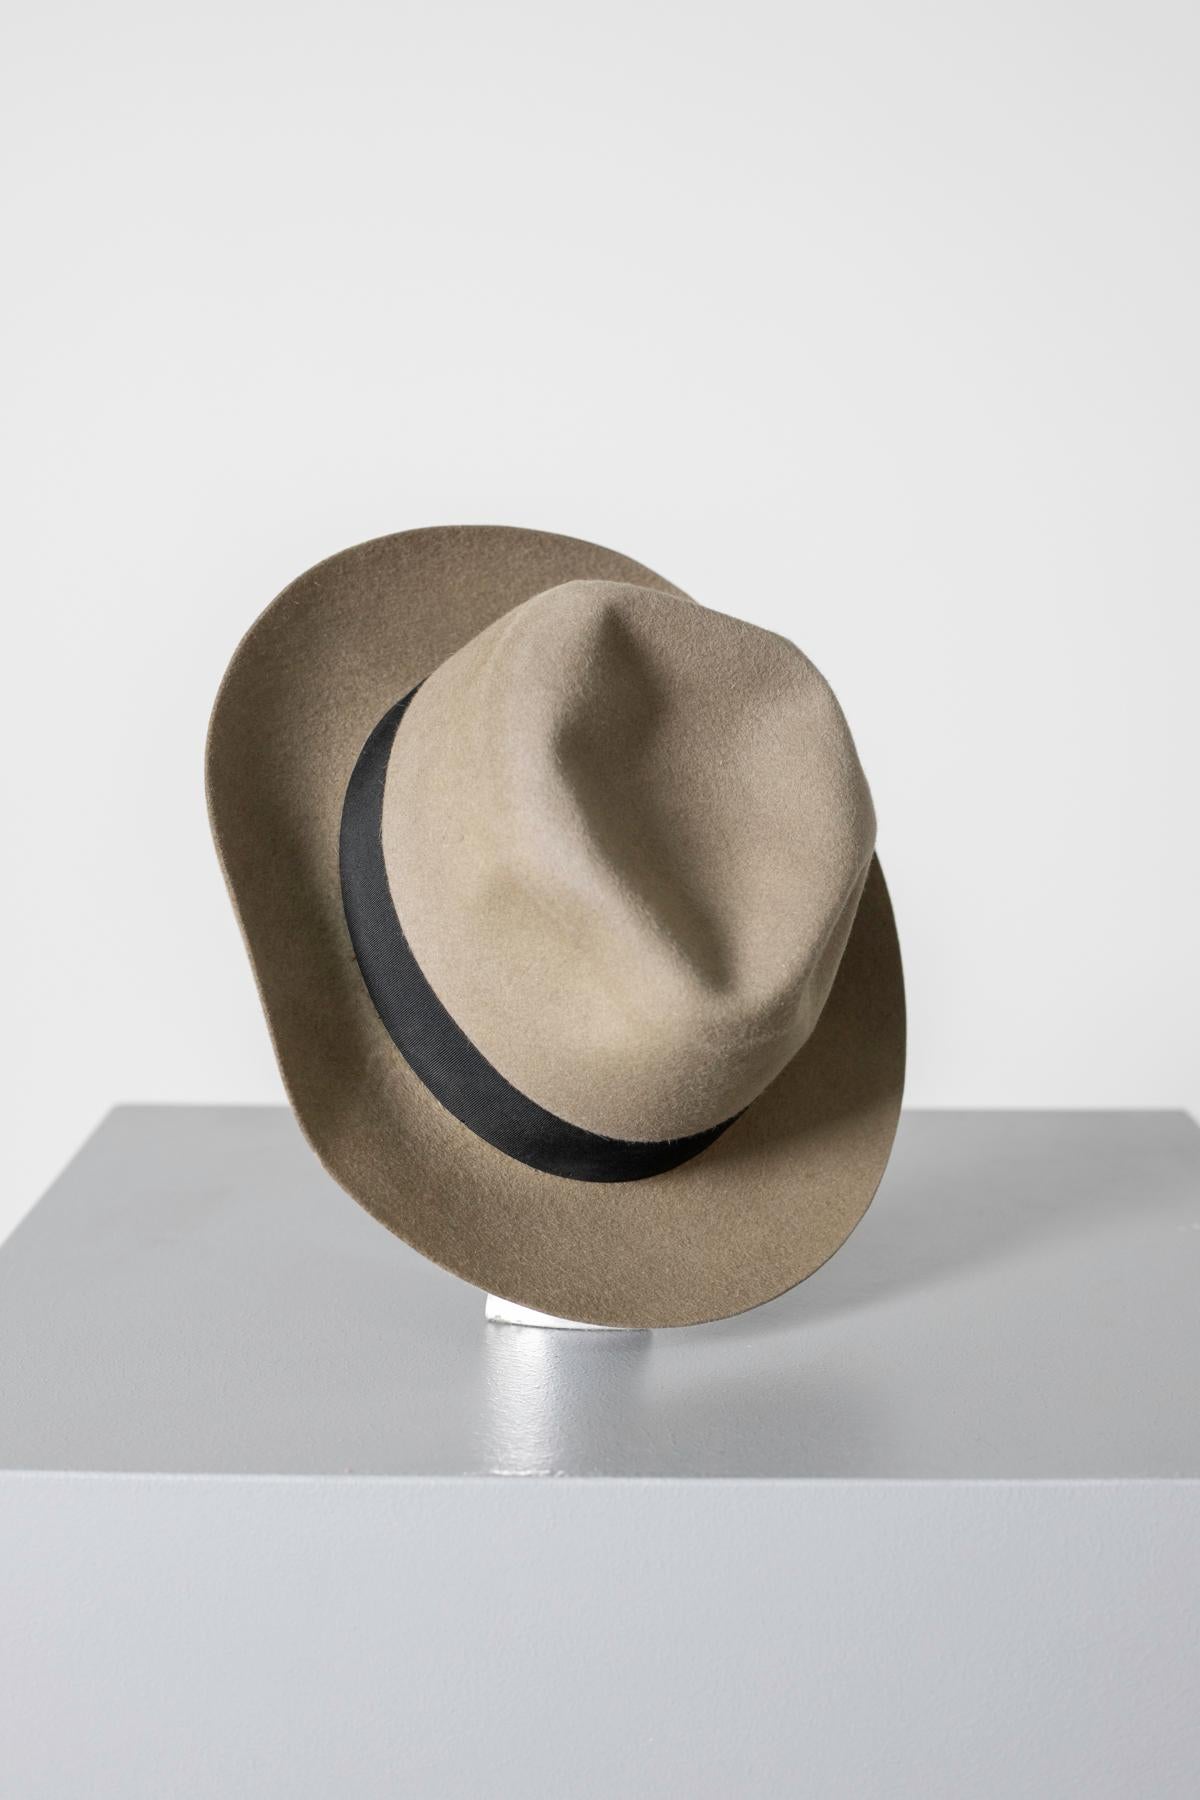 Joli chapeau en feutre beige du millésime des années 1990, belle fabrication italienne.
Le chapeau est entièrement en feutre
Le dôme porte 4 pinces souples.
À la base extérieure du dôme se trouve une bande noire avec un petit nœud sur la gauche.
A